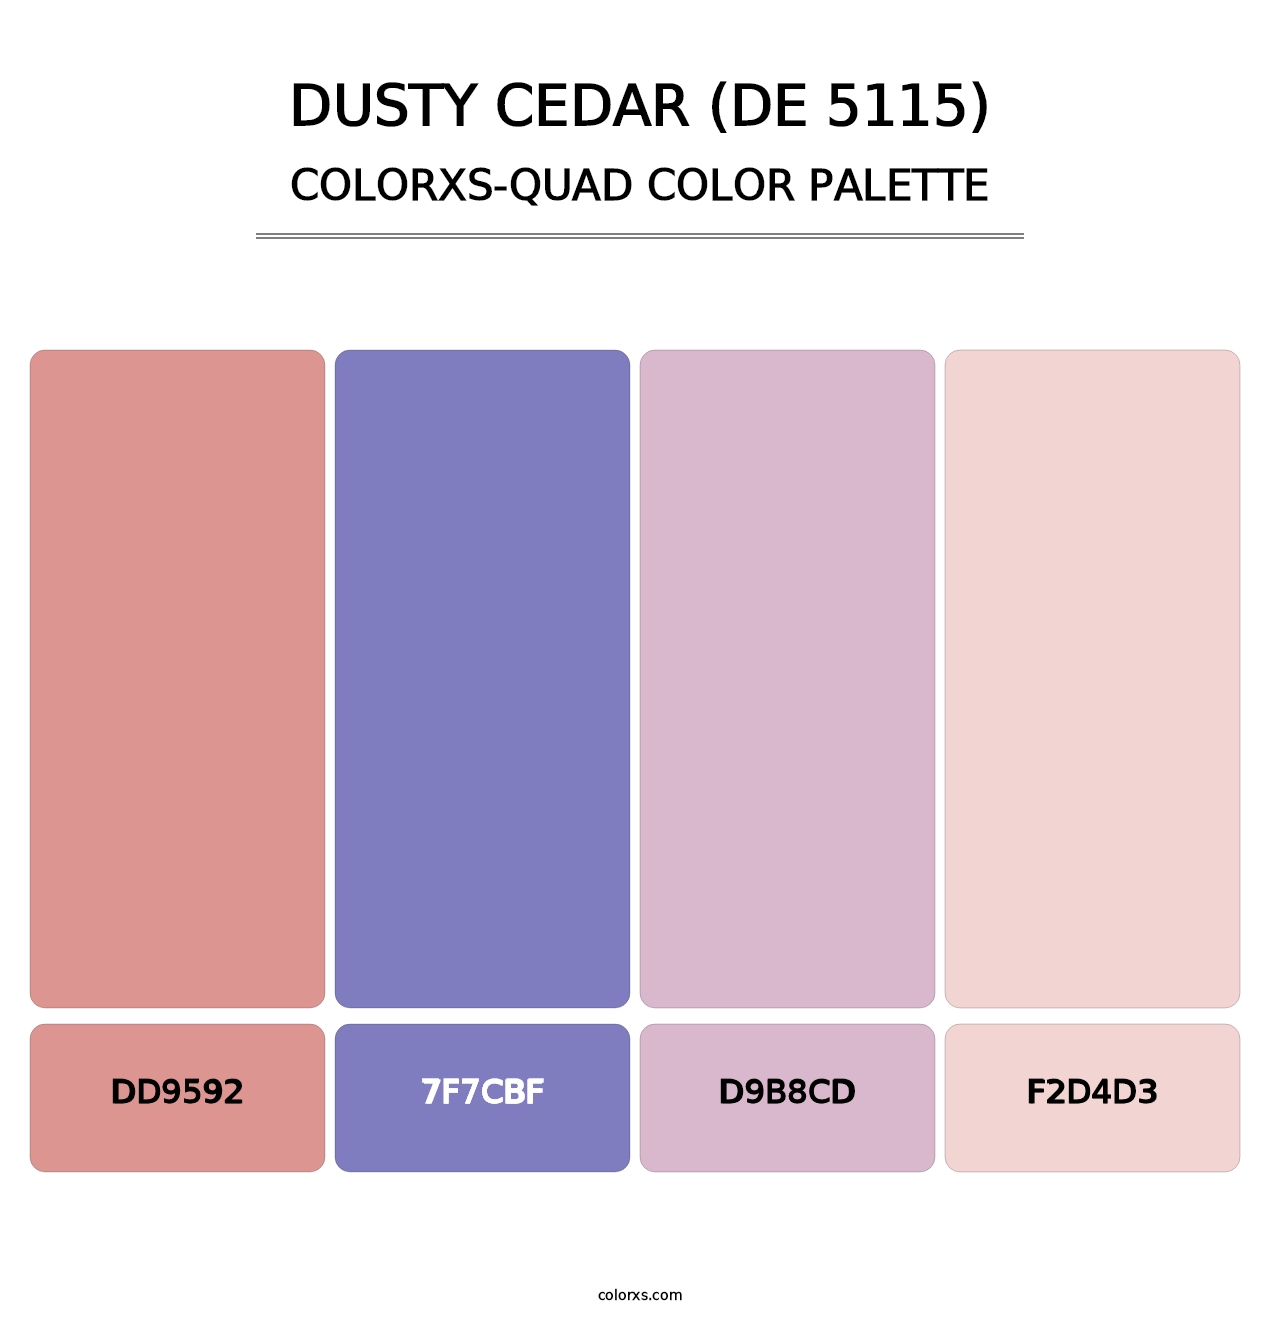 Dusty Cedar (DE 5115) - Colorxs Quad Palette